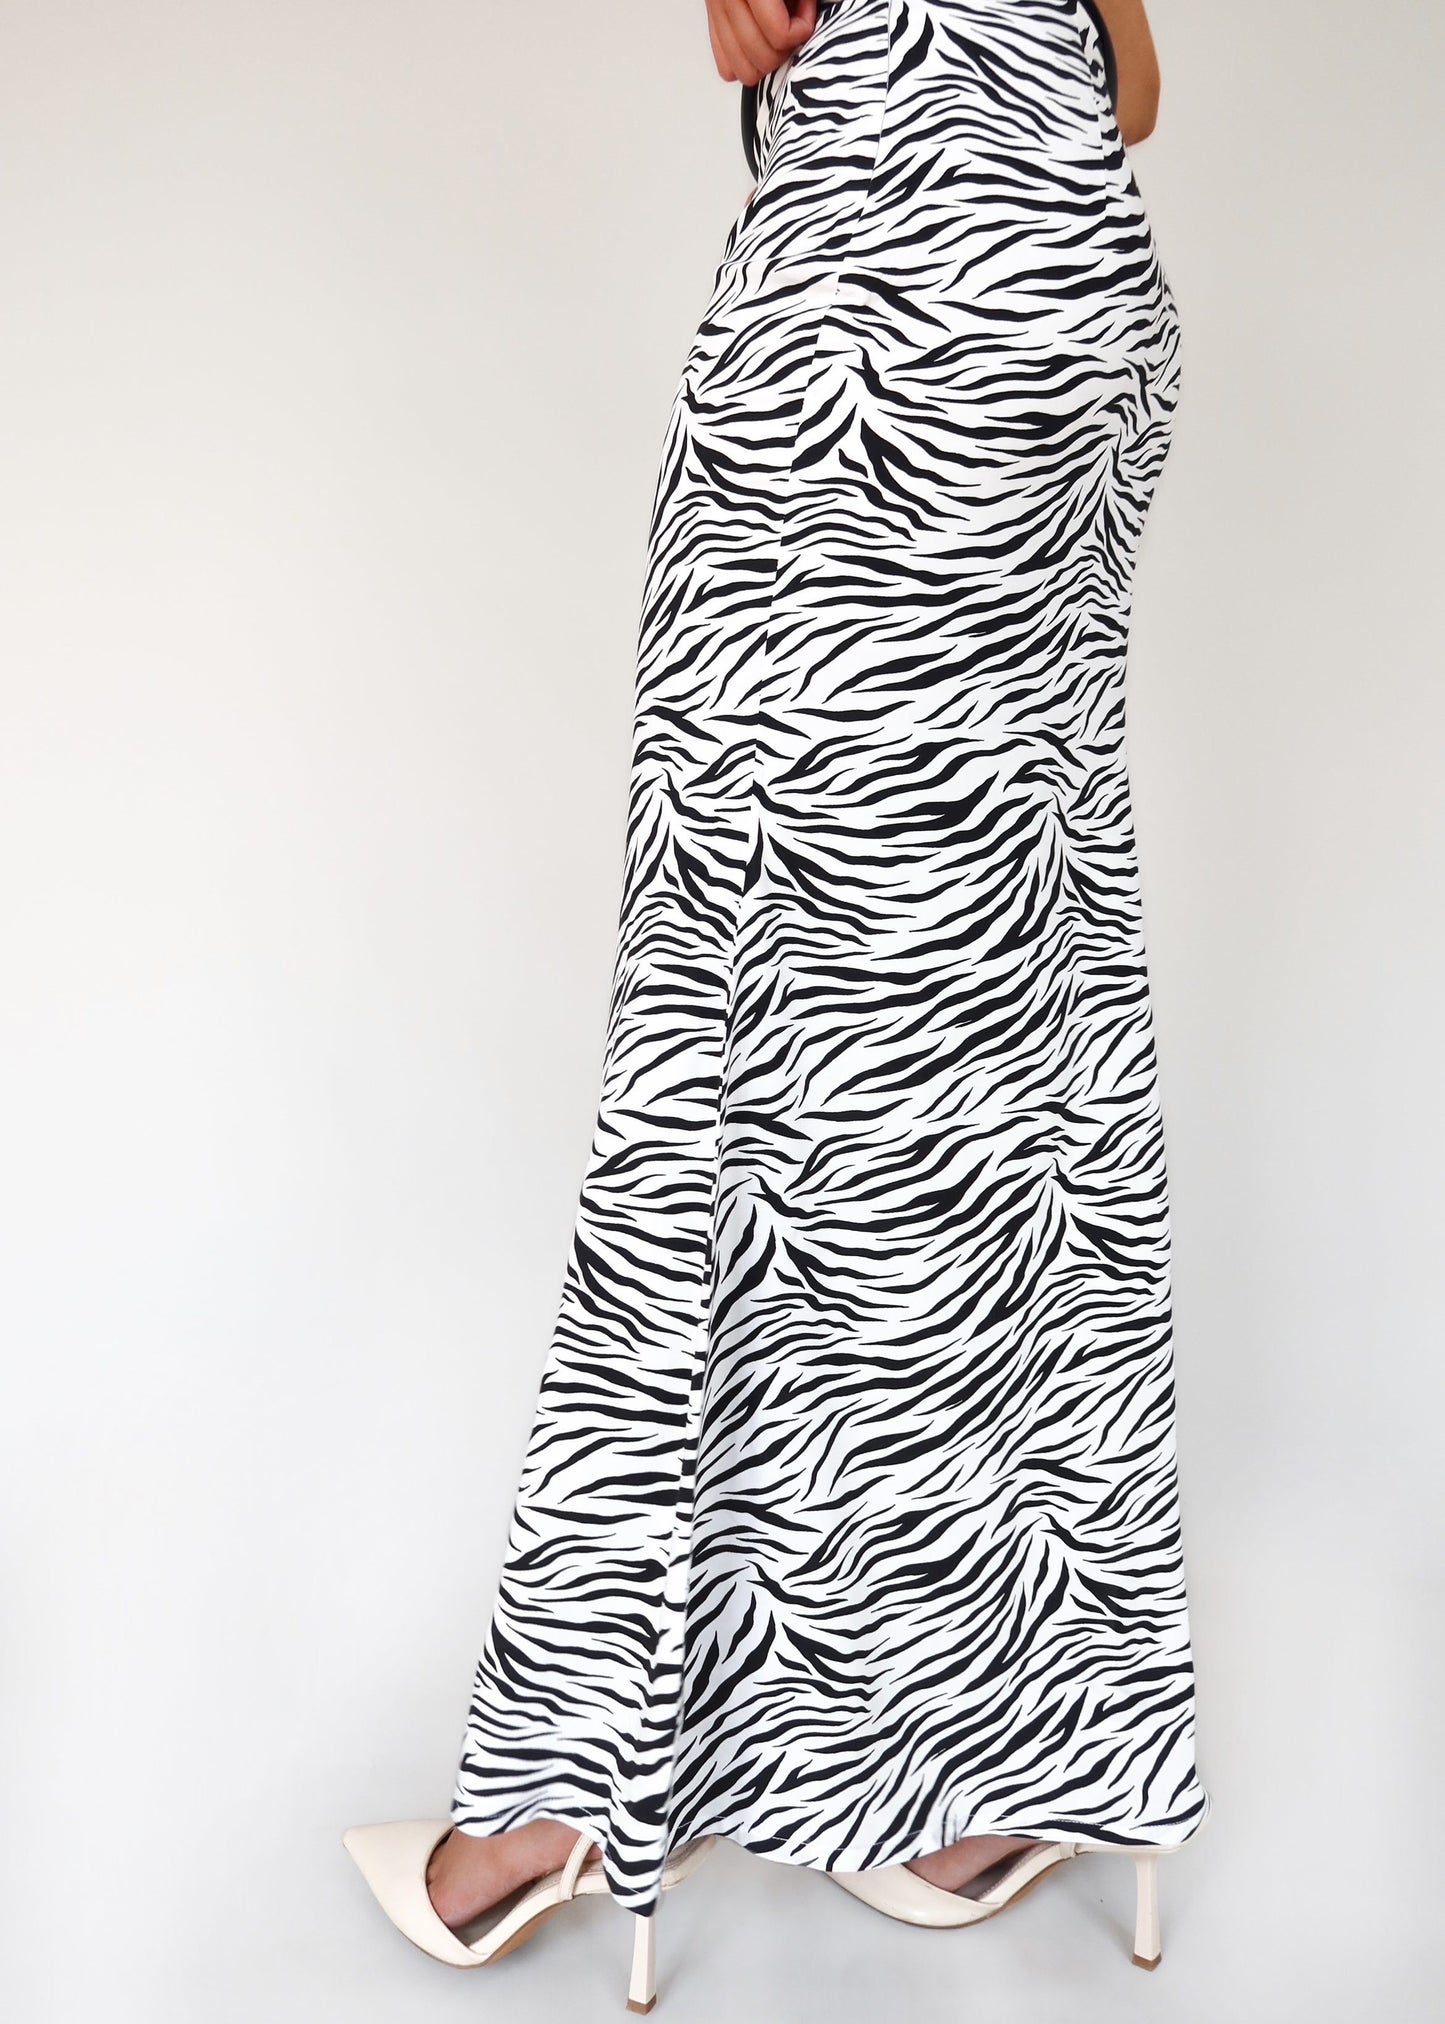 Zebra Print Long Skirt